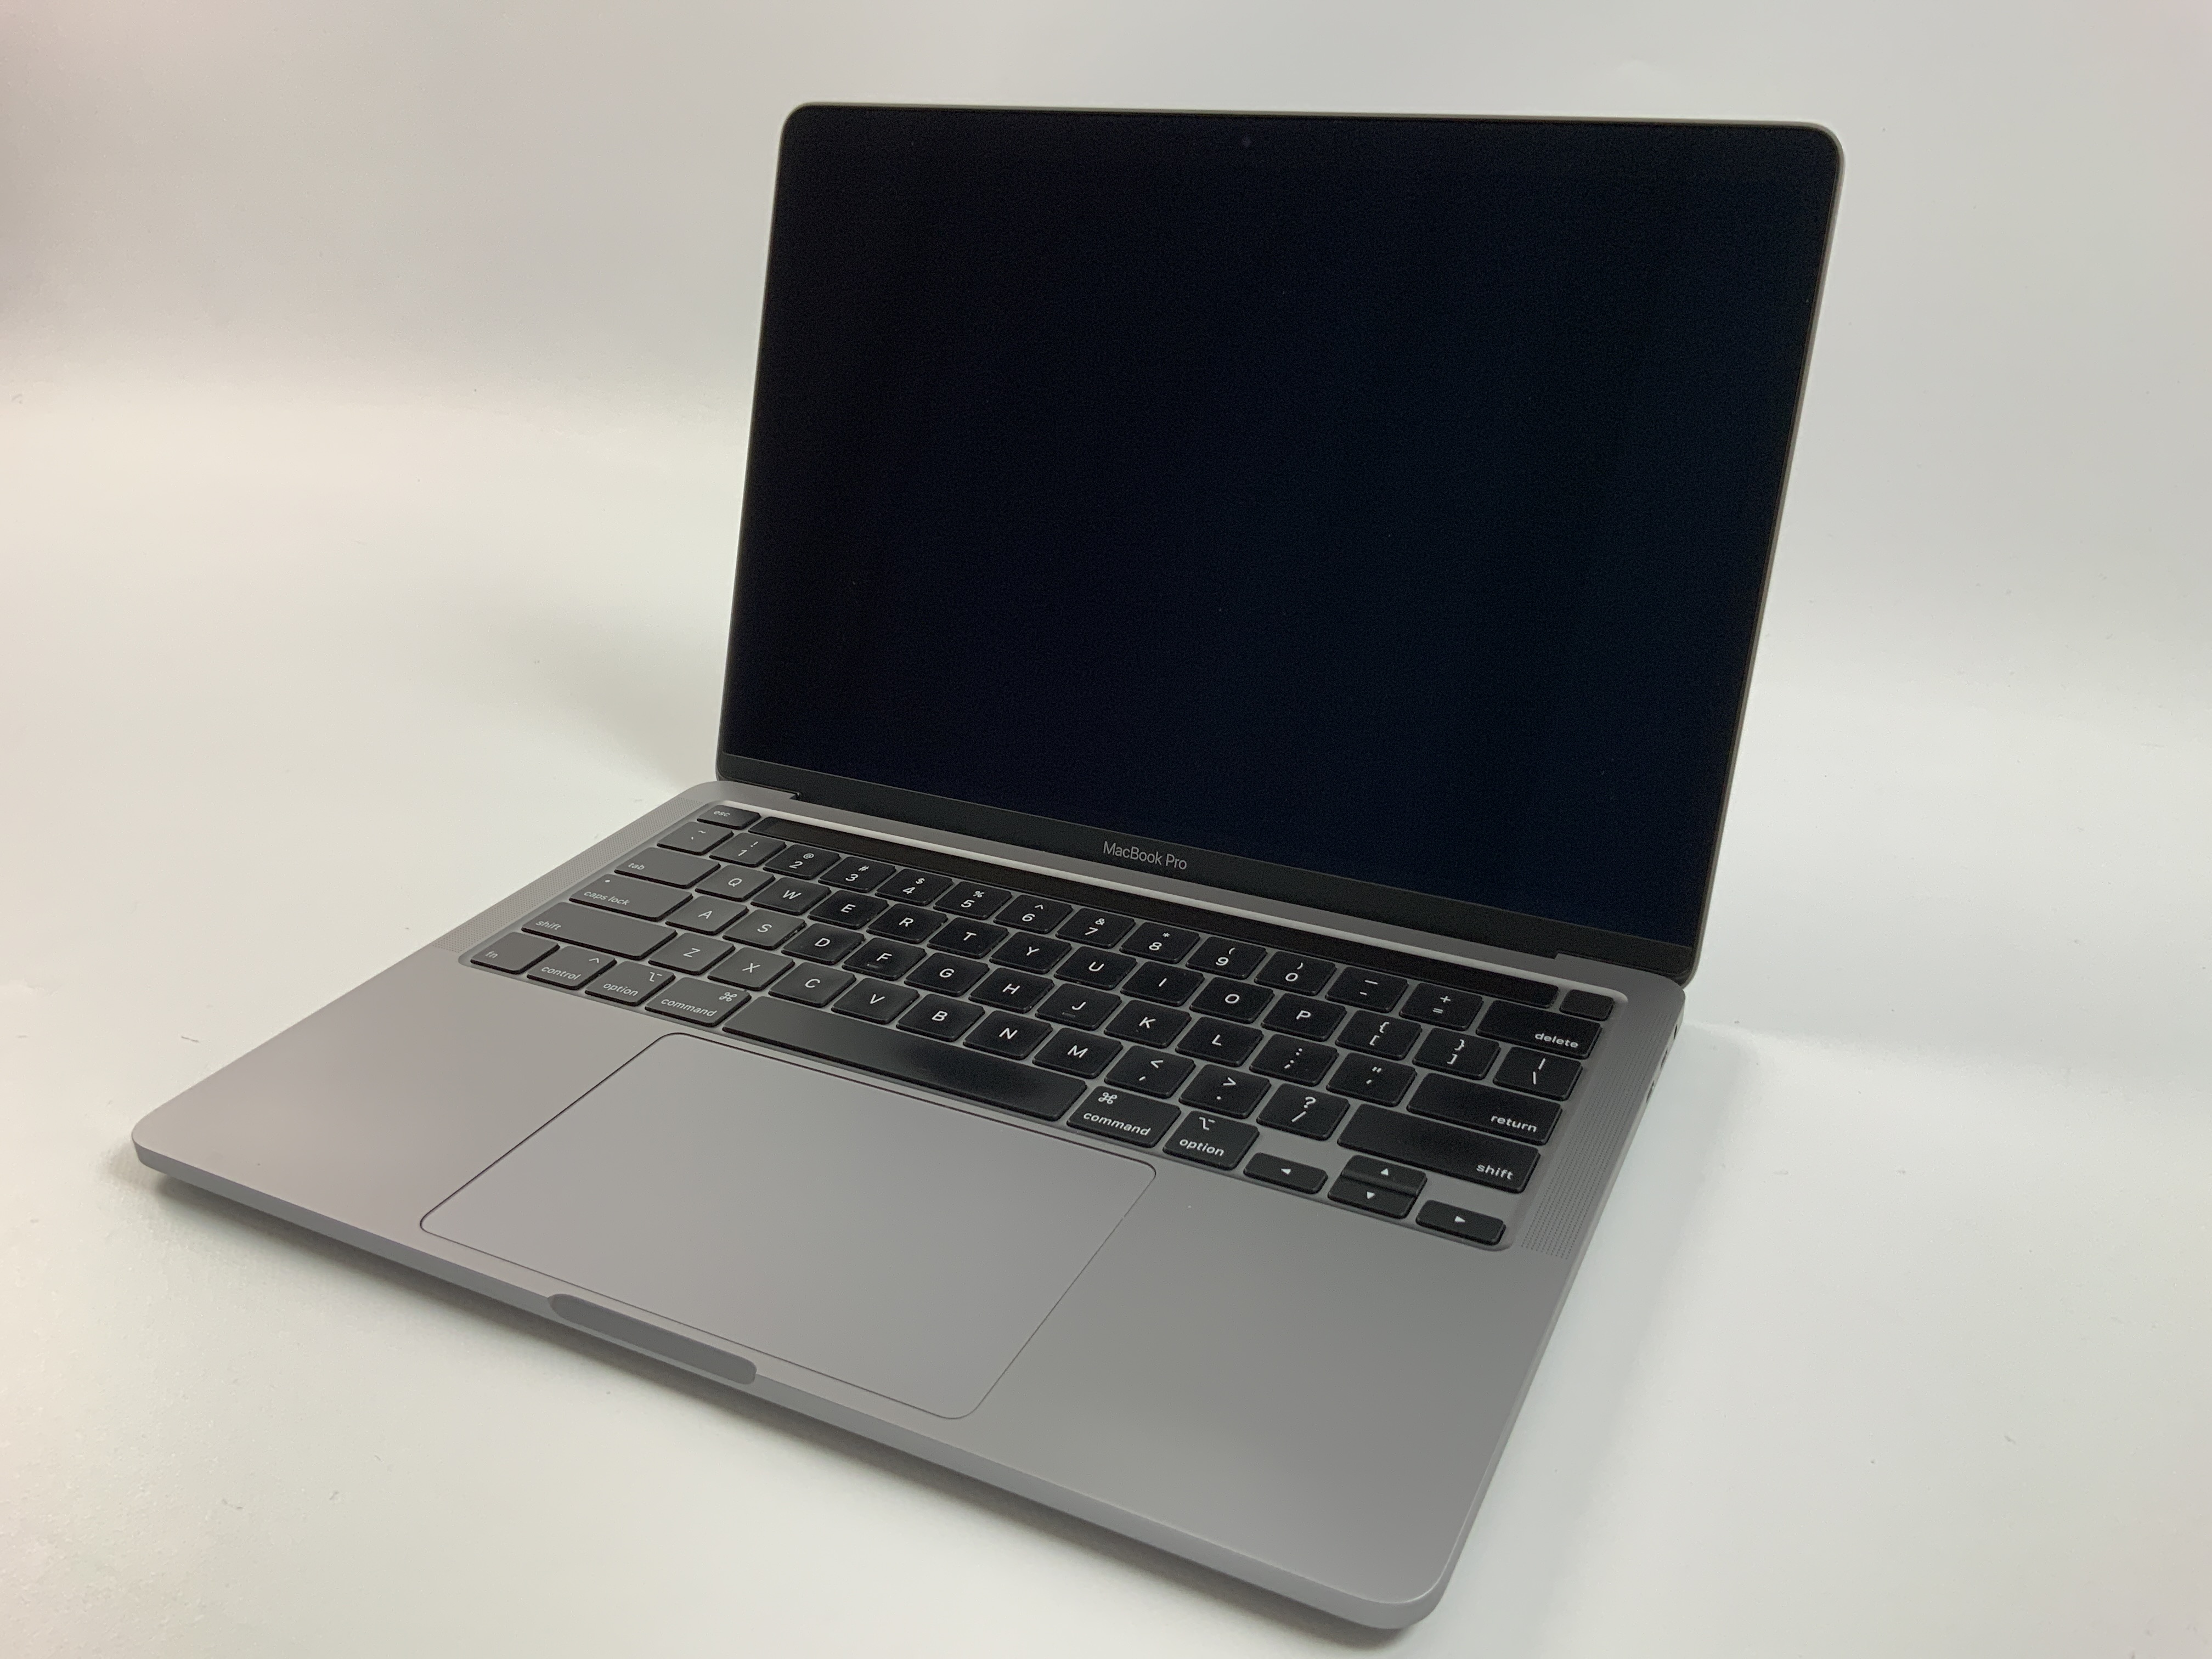 MacBook Pro 13" 4TBT Mid 2020 (Intel Quad-Core i5 2.0 GHz 16 GB RAM 512 GB SSD), Space Gray, Intel Quad-Core i5 2.0 GHz, 16 GB RAM, 512 GB SSD, Bild 1